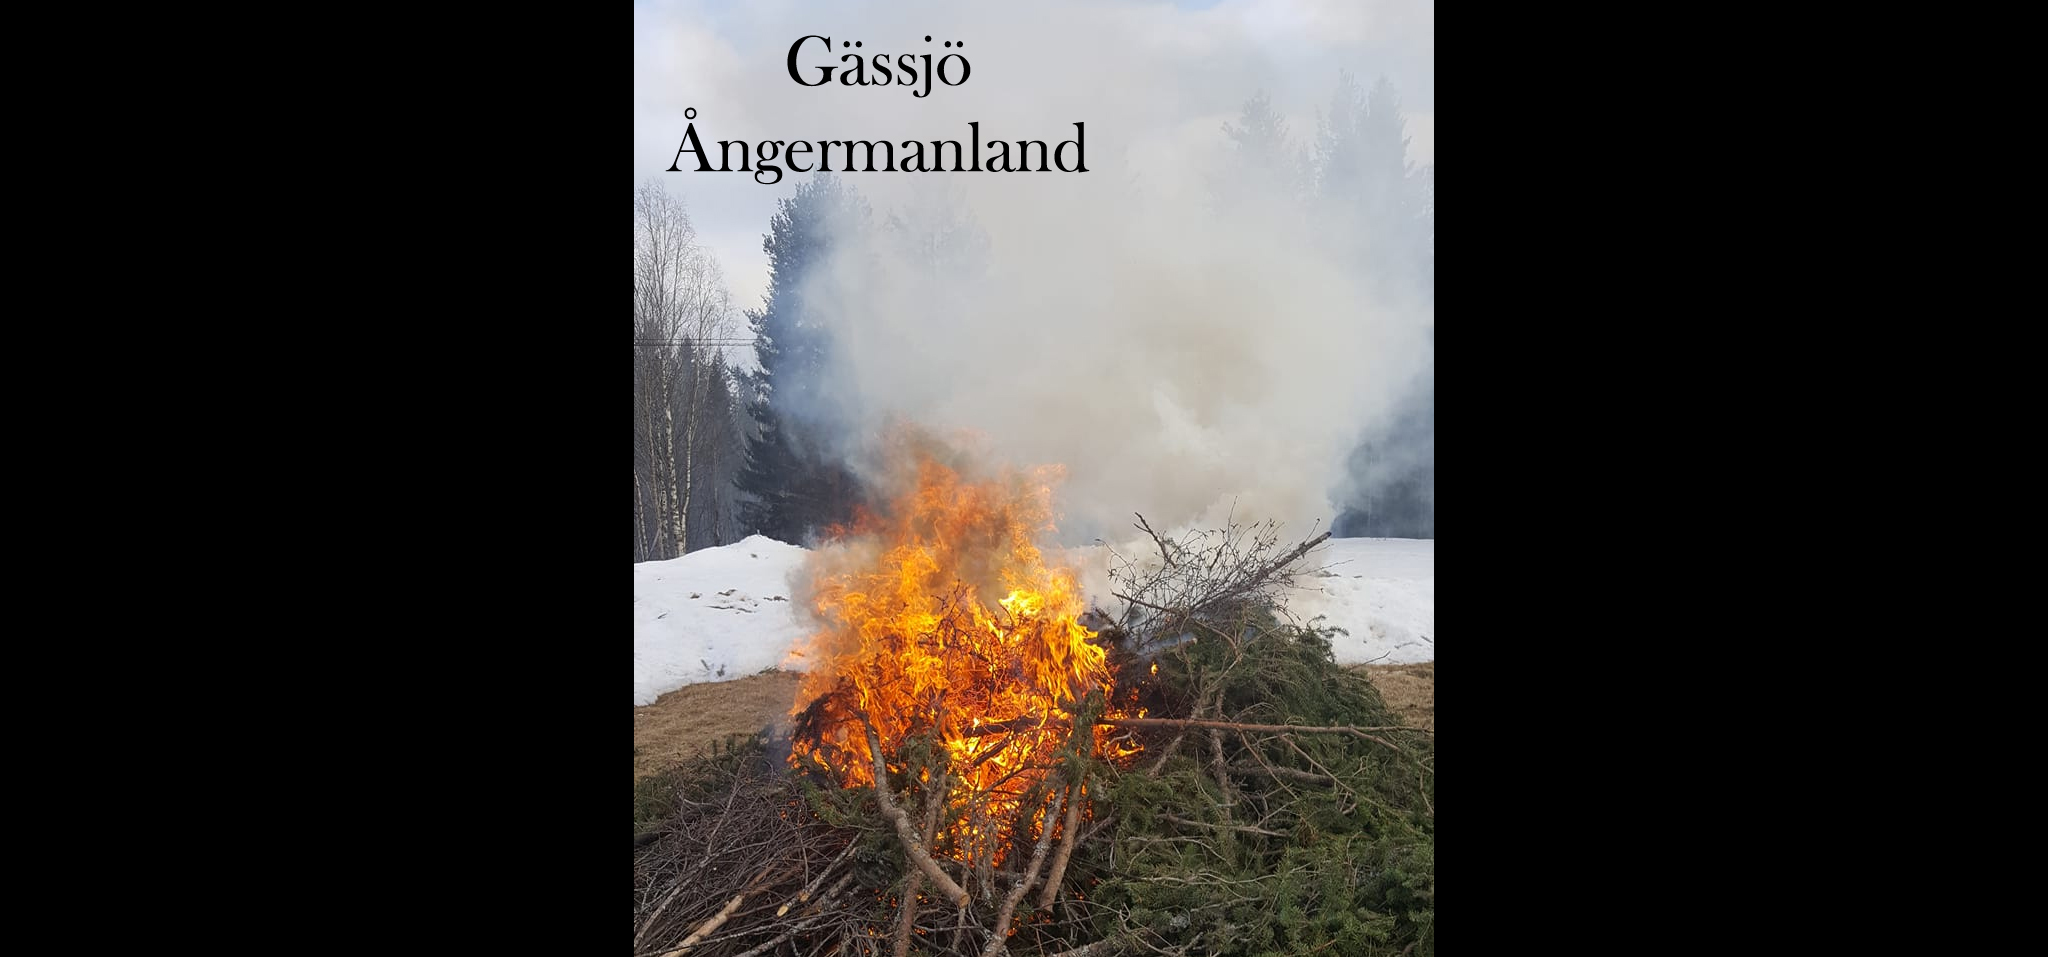 gassjo_angermanland